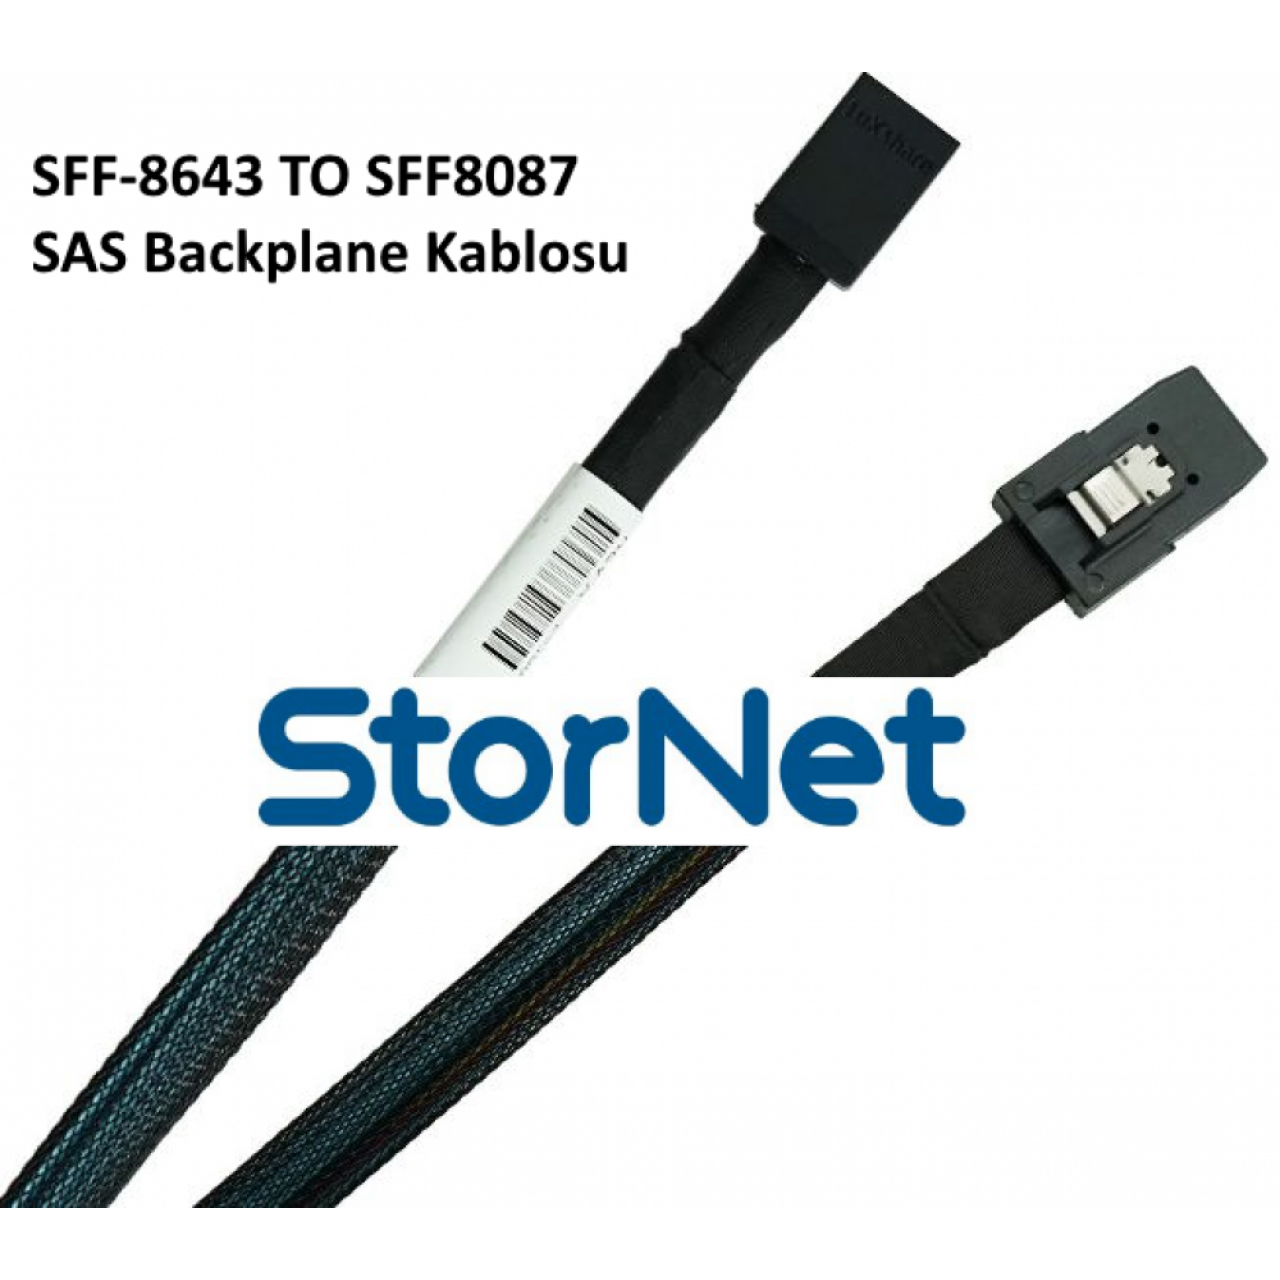 SAS BackPlane Kablosu SFF-8087 to SFF-8643 SAS  1 Metre